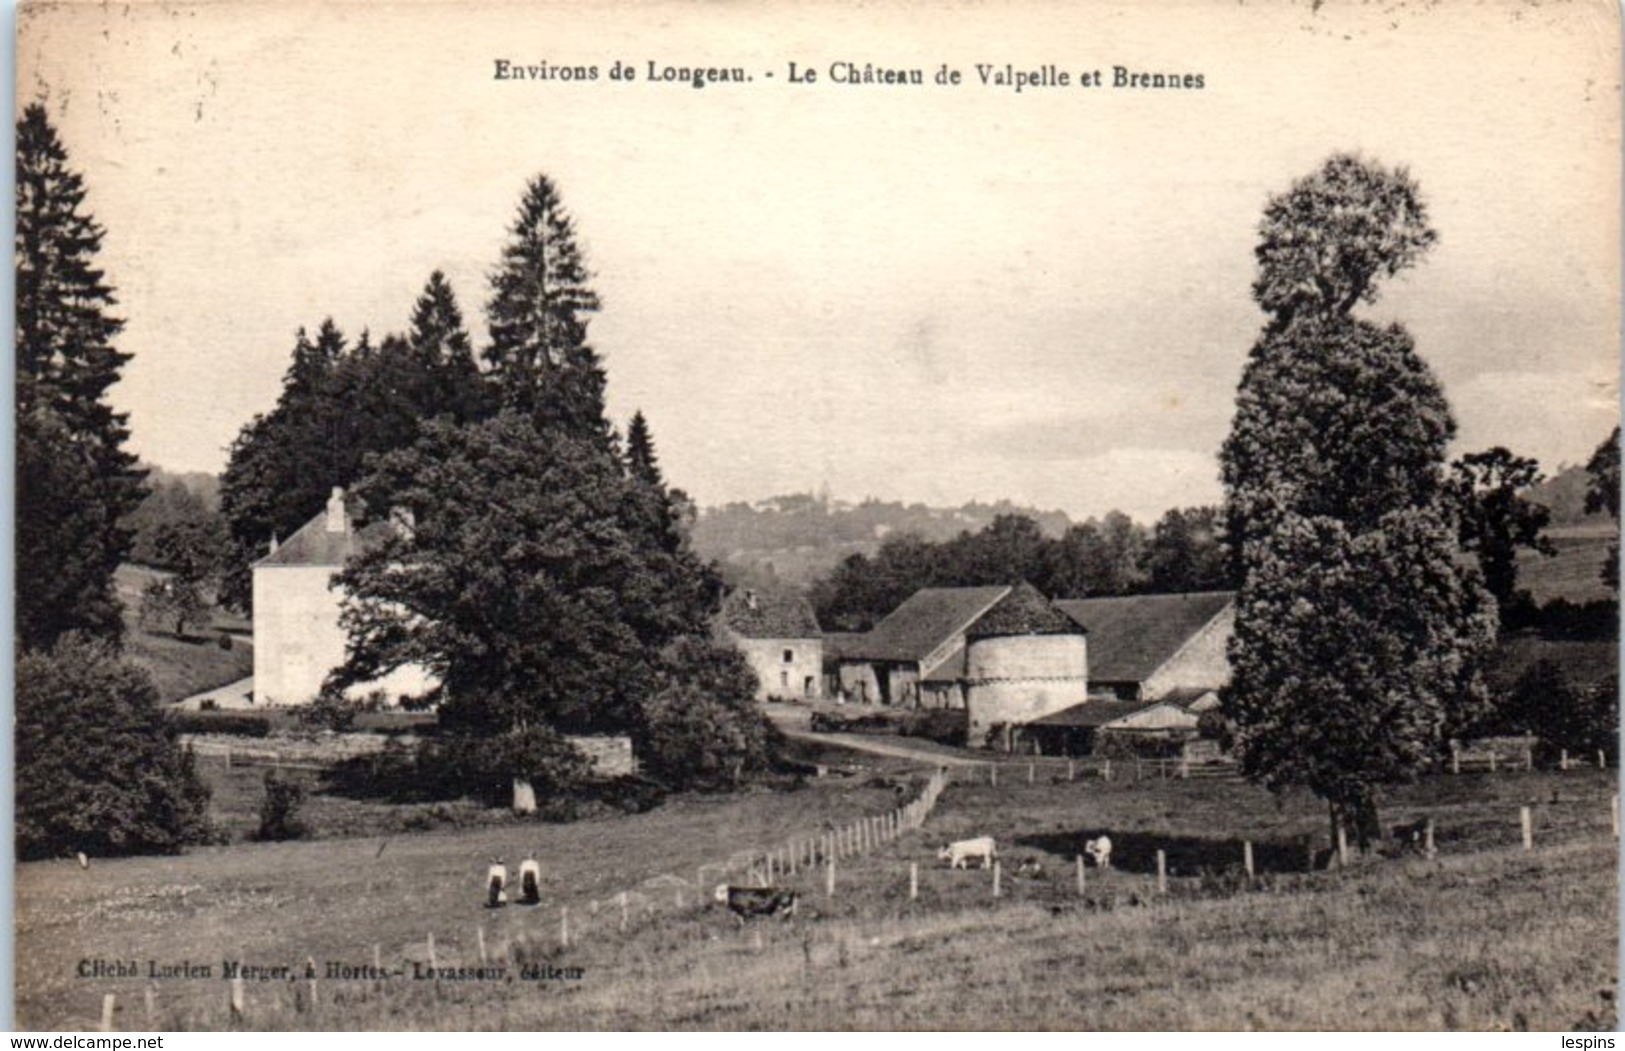 52 - Le Chateau De VALPELLE Et Bresne - Environ De Longeau - Le Vallinot Longeau Percey